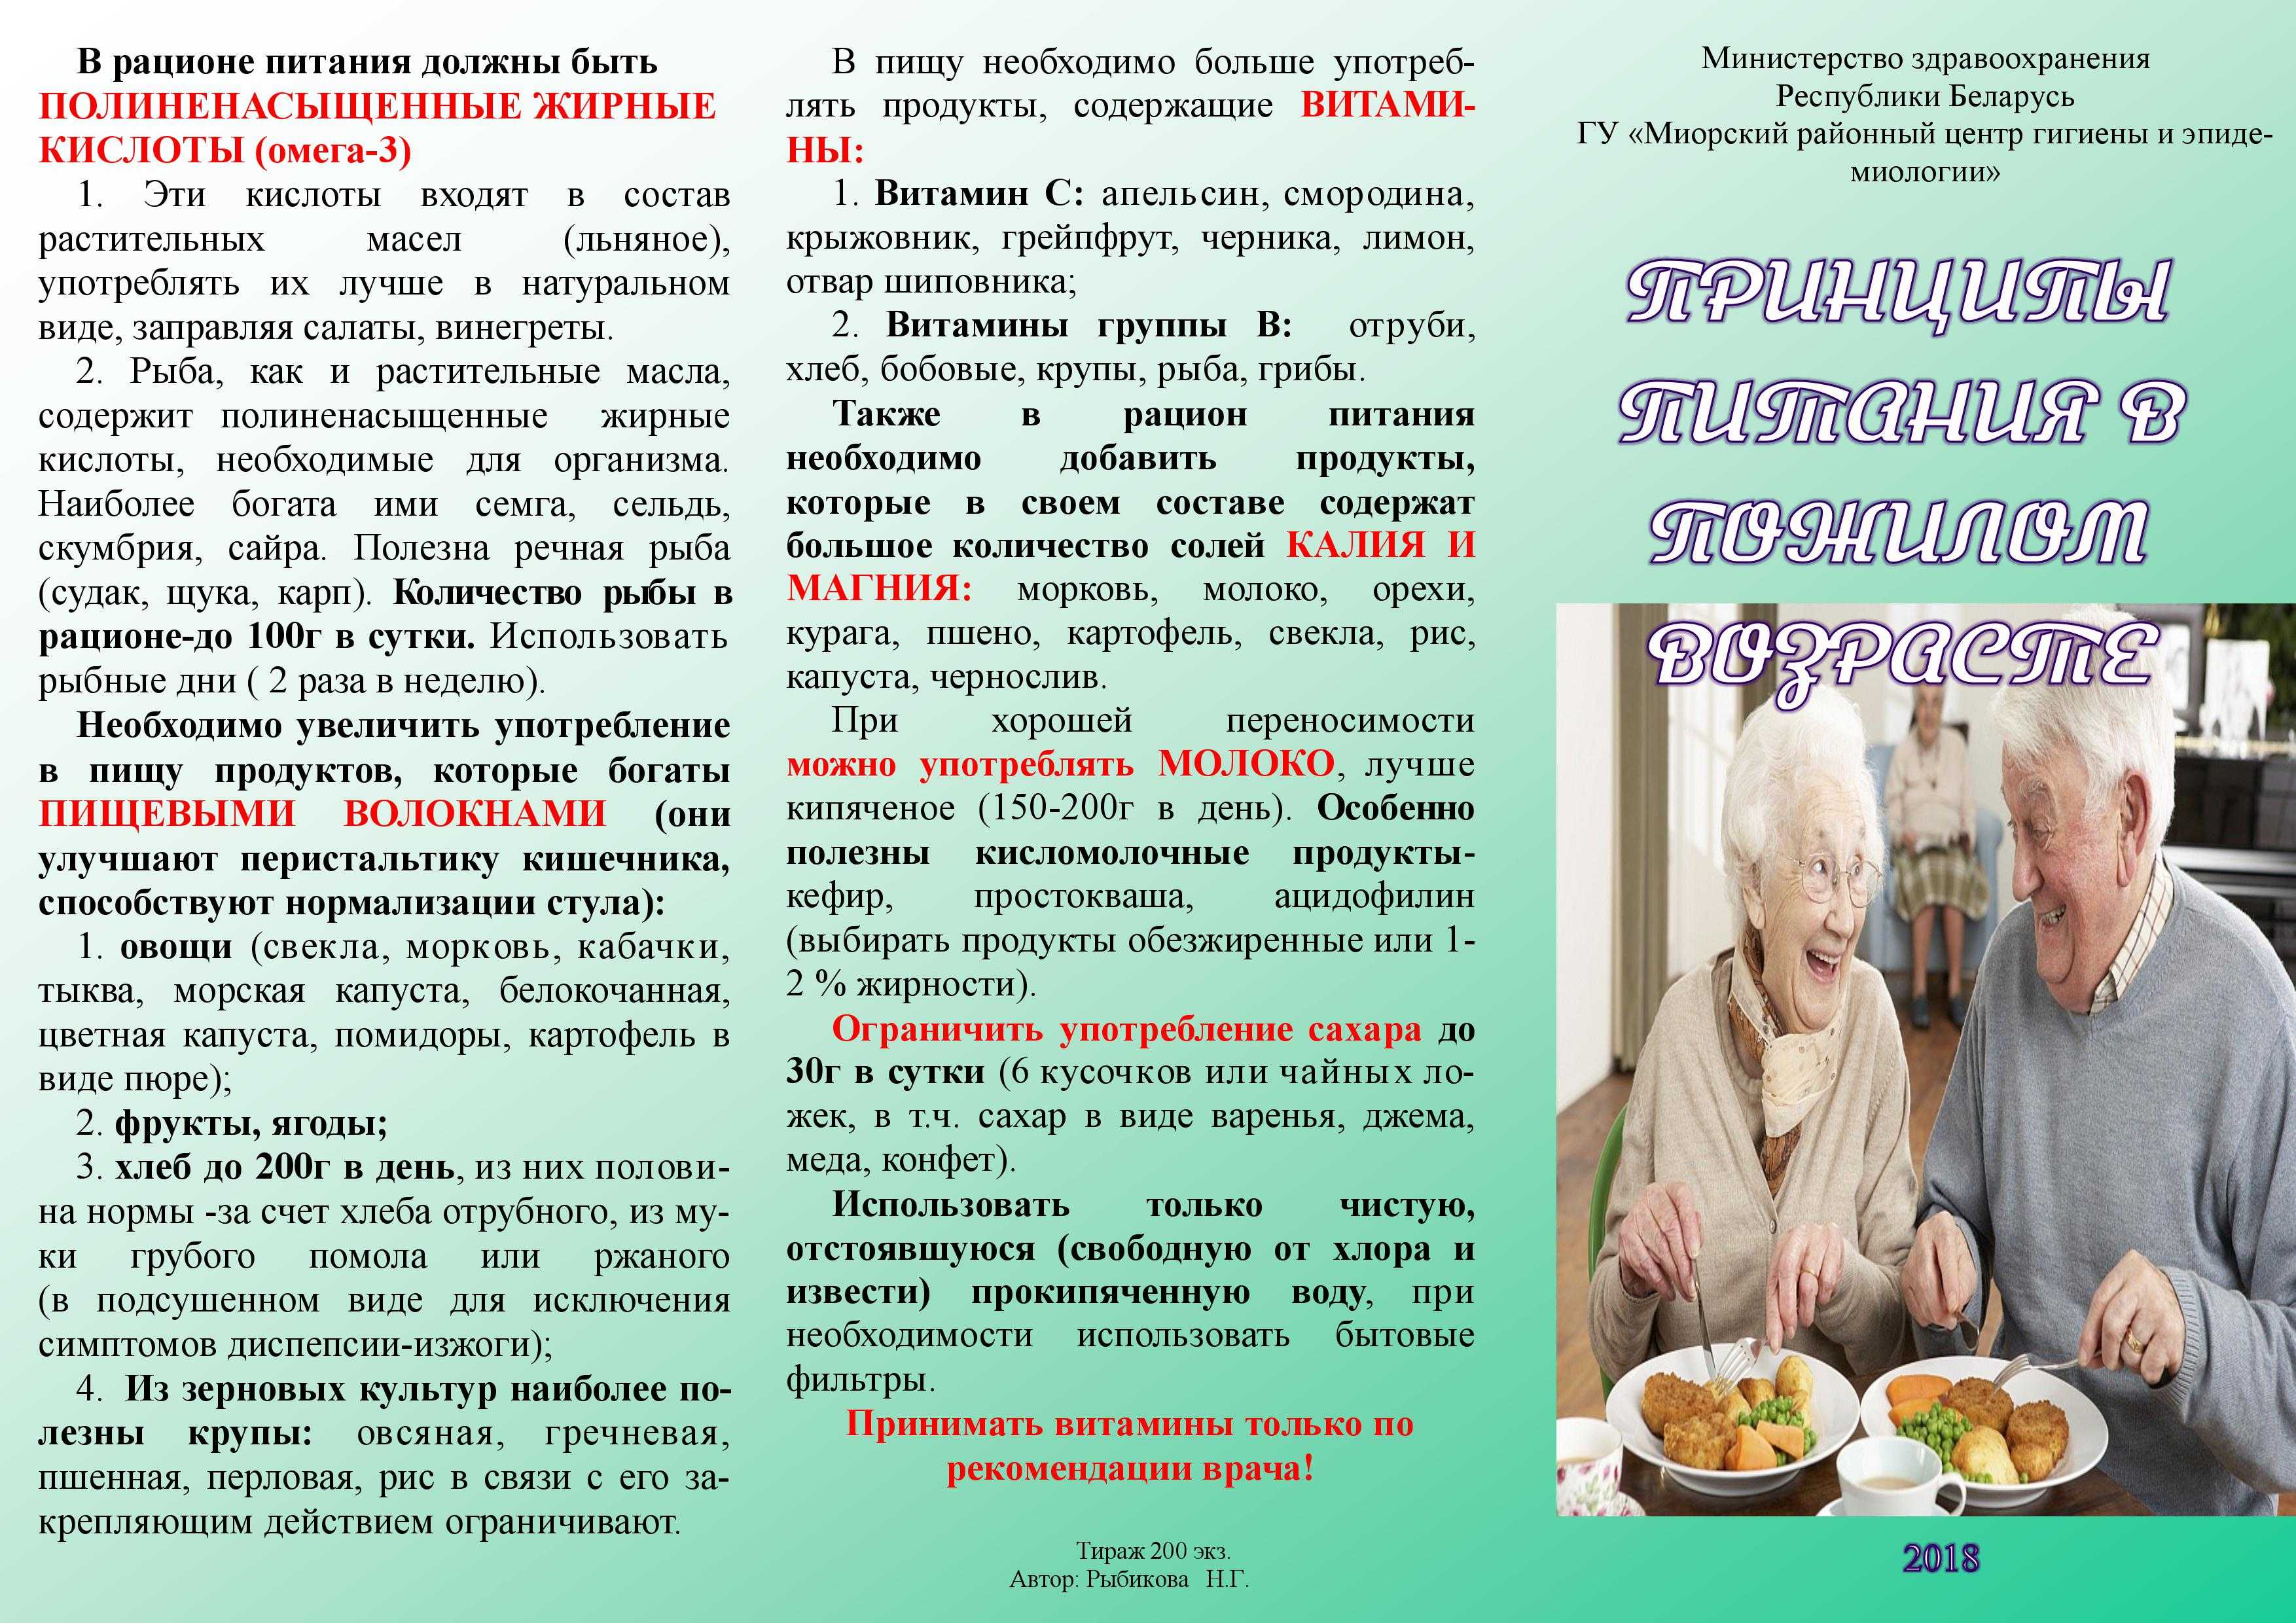 Диеты после 60. Питание пожилых людей рекомендации. Рекомендации по питанию пожилого возраста. Питание пожилых людей памятка. Советы по питанию для пожилых людей.